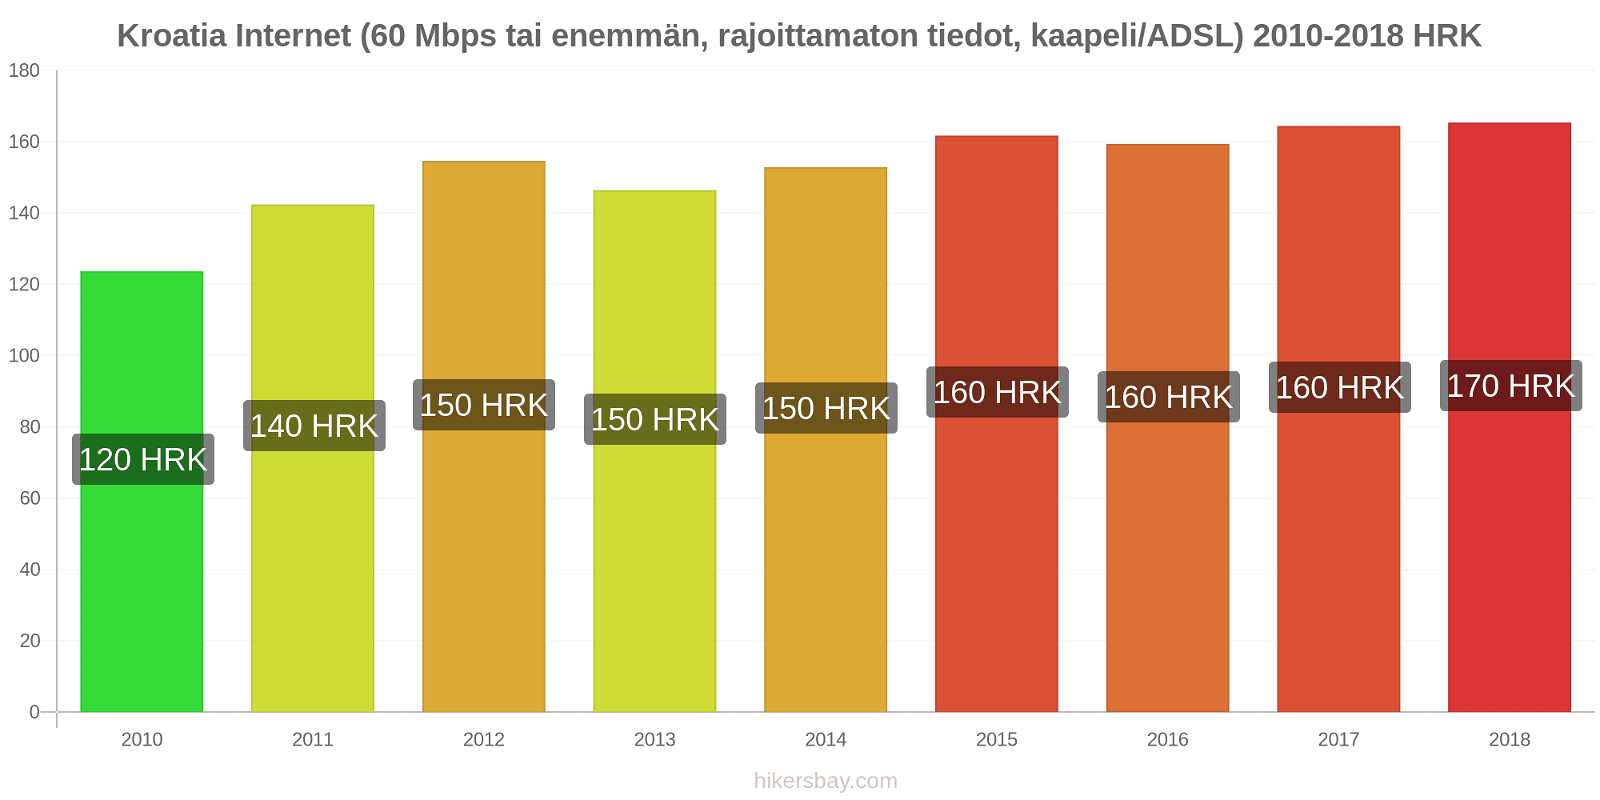 Kroatia hintojen muutokset Internet (60 Mbps tai enemmän, rajoittamaton tiedot, kaapeli/ADSL) hikersbay.com